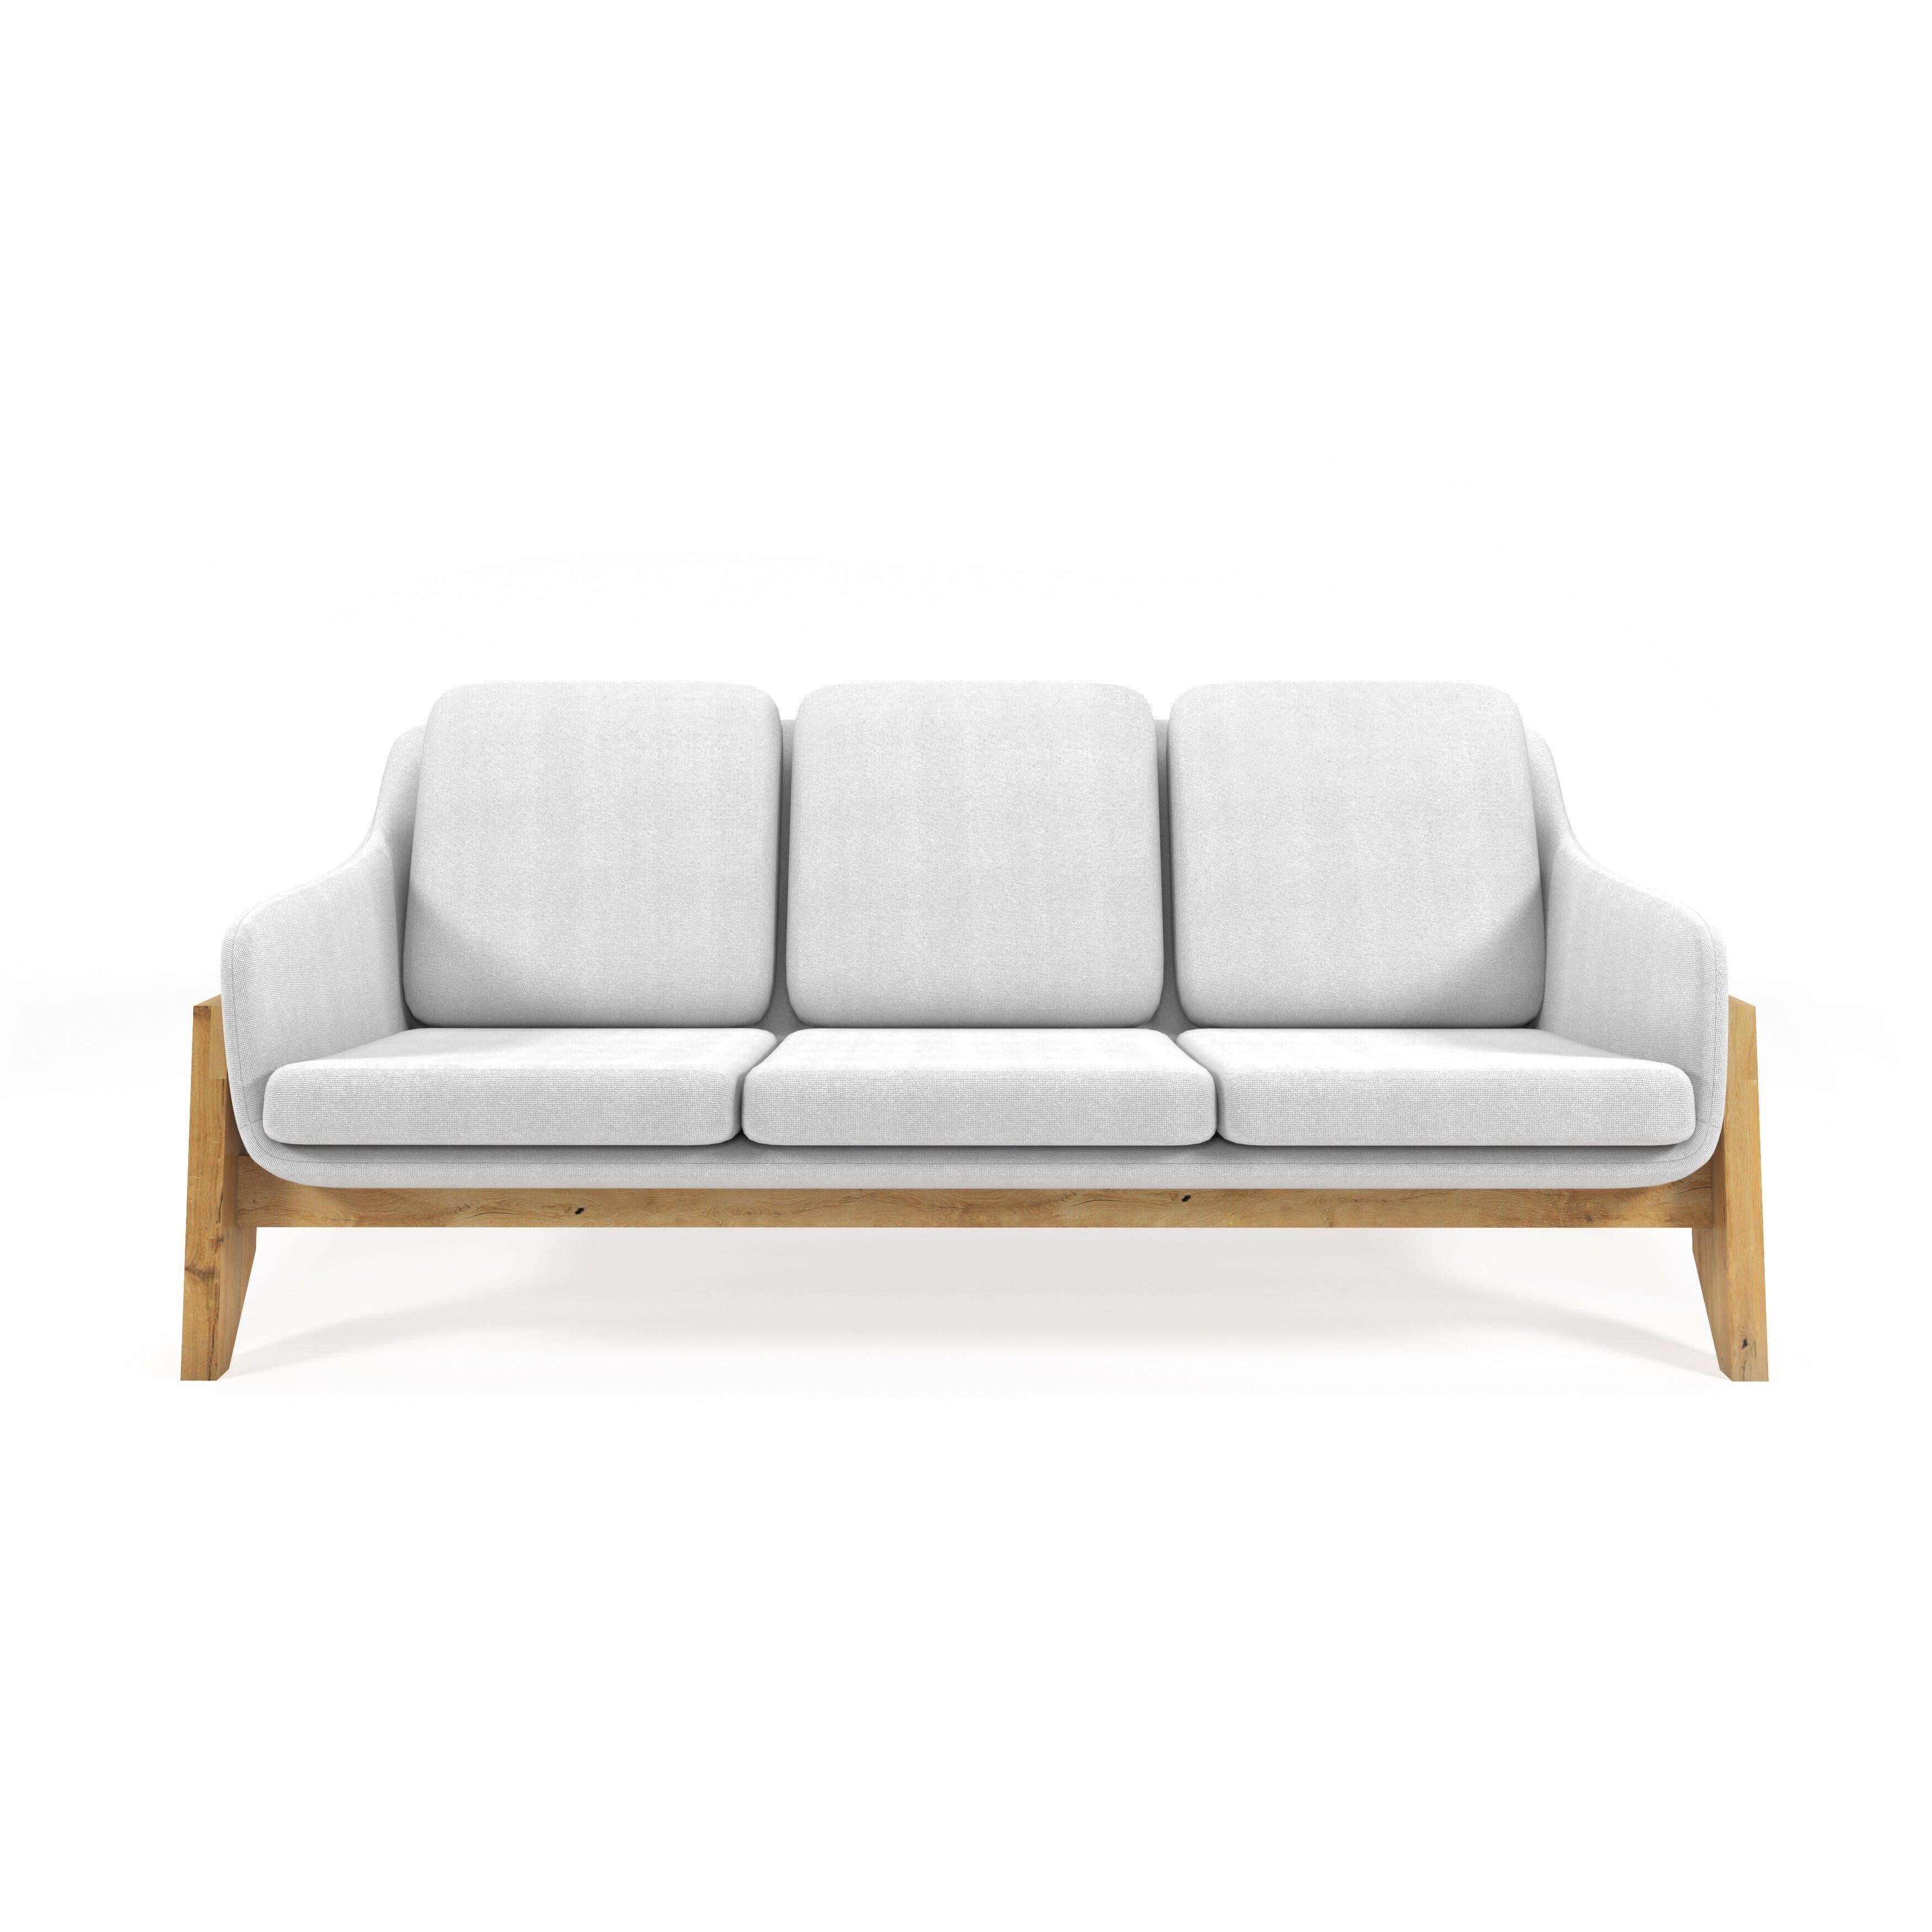 Bringen Sie die Schönheit Ihres Innen- oder Außenbereiches mit dem Nava-Sofa zusammen! Dieses vielseitige Möbelstück besticht durch seine markanten Holzverbindungen und sein Design und wertet jeden Bereich auf, in dem Sie es aufstellen. Holen Sie